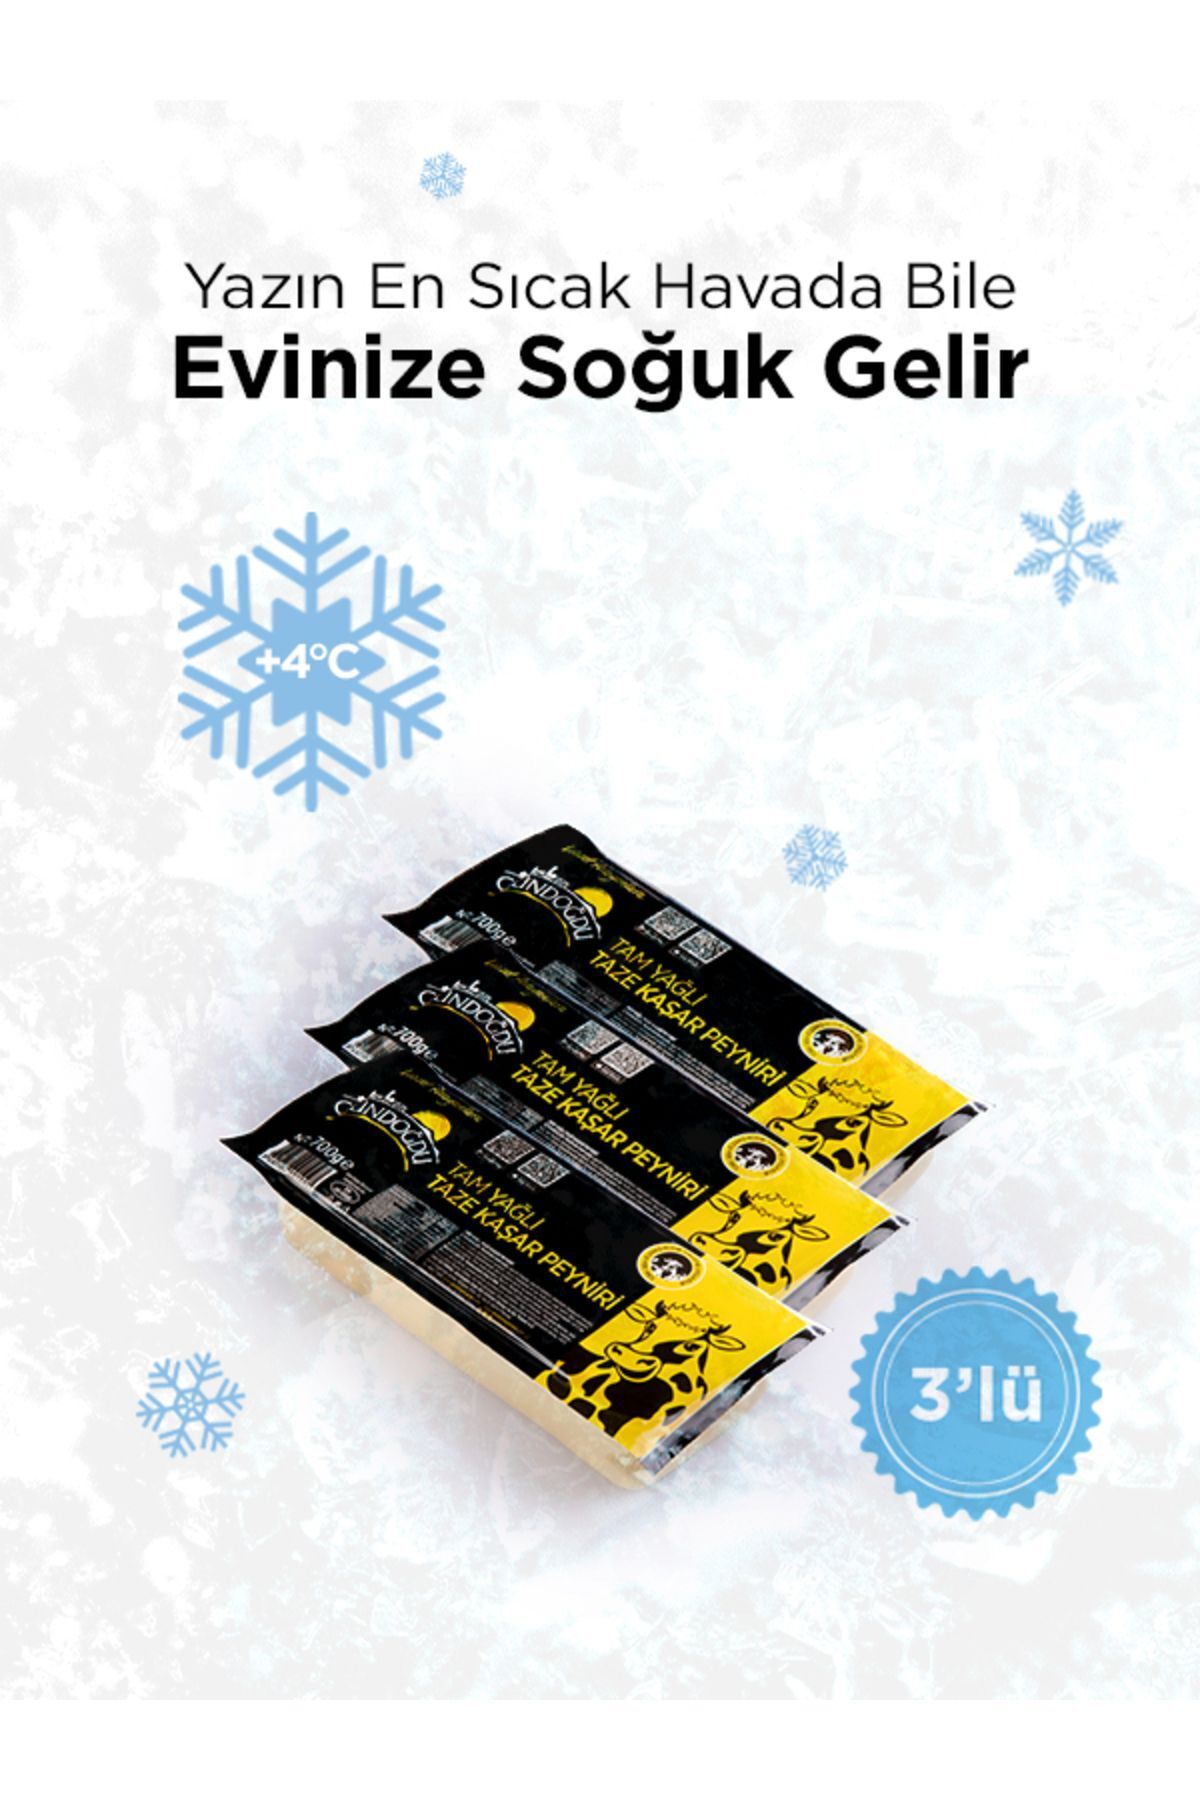 Gündoğdu Taze Kaşar Peynir 700gr 3'lü Paket